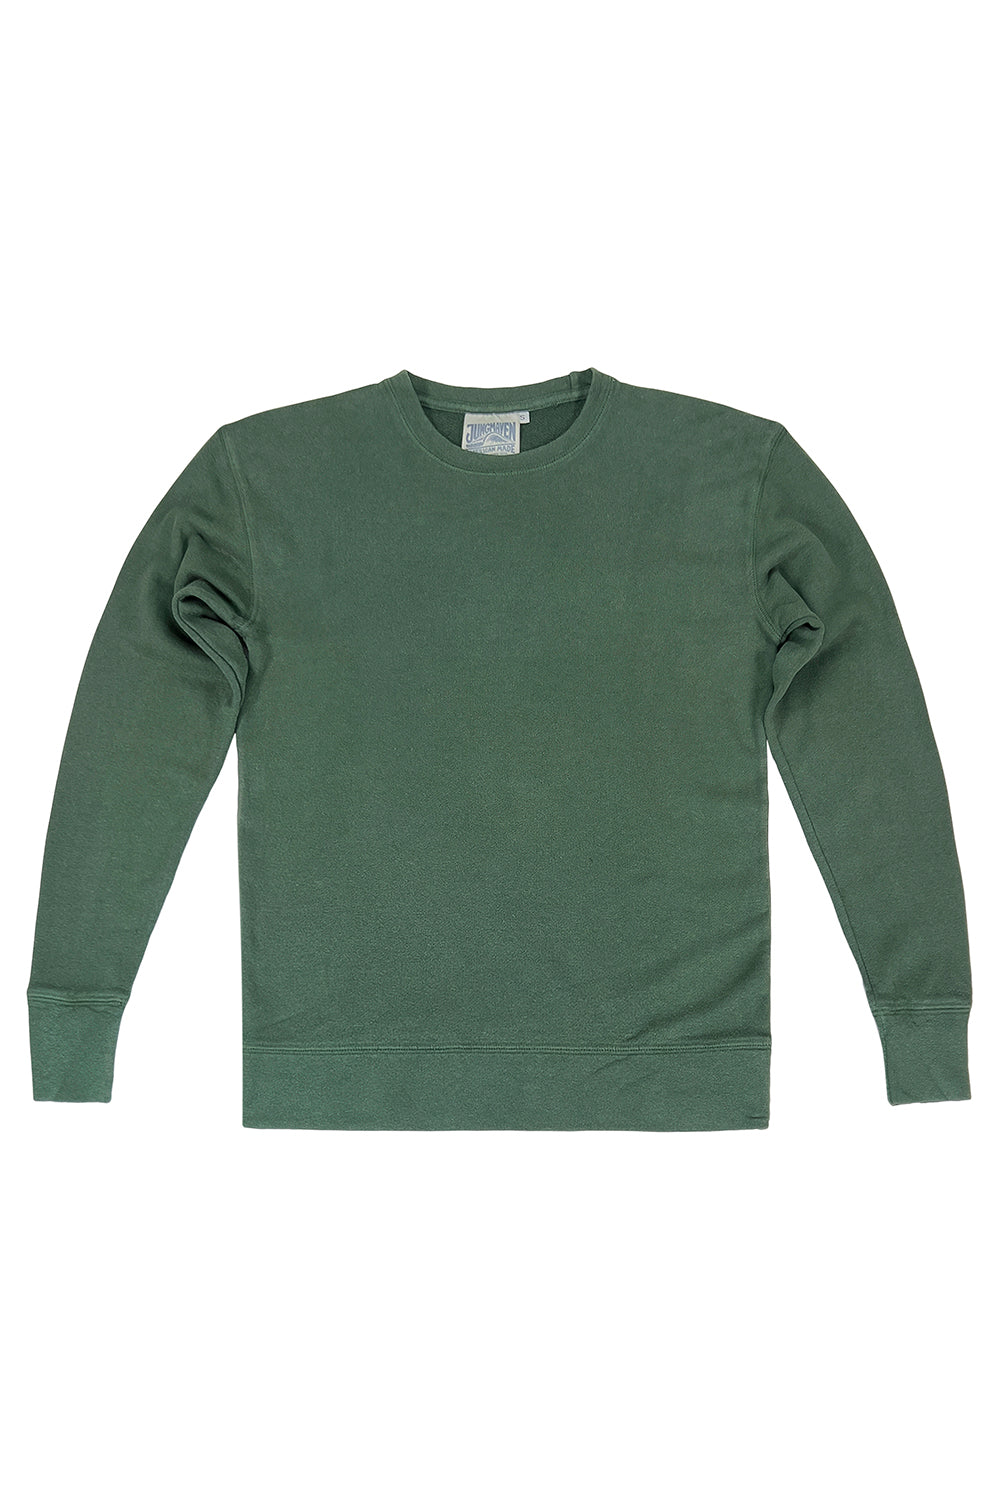 Tahoe Sweatshirt | Jungmaven Hemp Clothing & Accessories / Color: Hunter Green